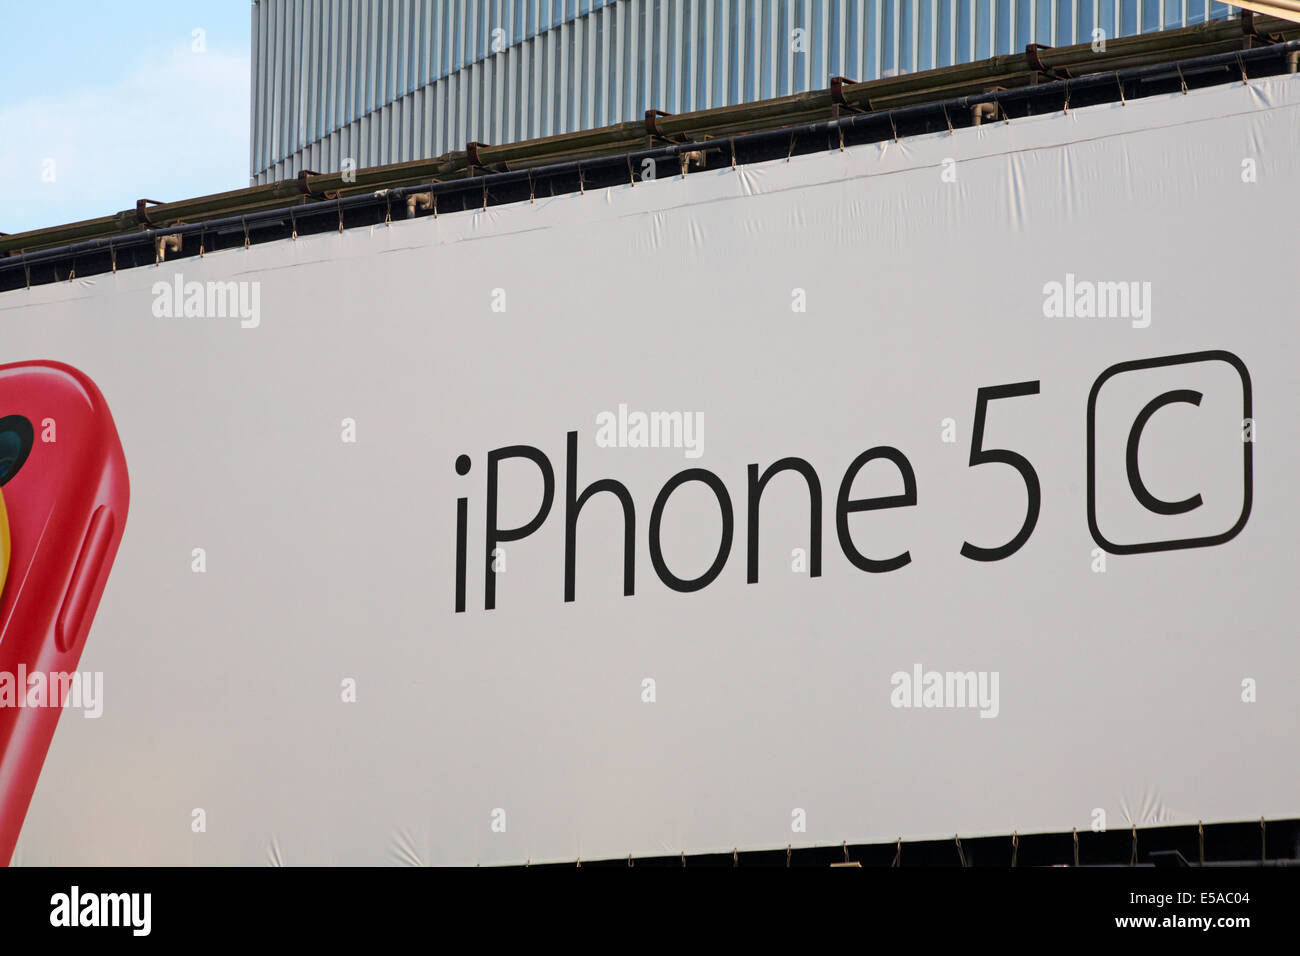 Dettagli su iPhone 5C iPhone5C sul cartellone pubblicitario a Londra nel Regno Unito a luglio Foto Stock